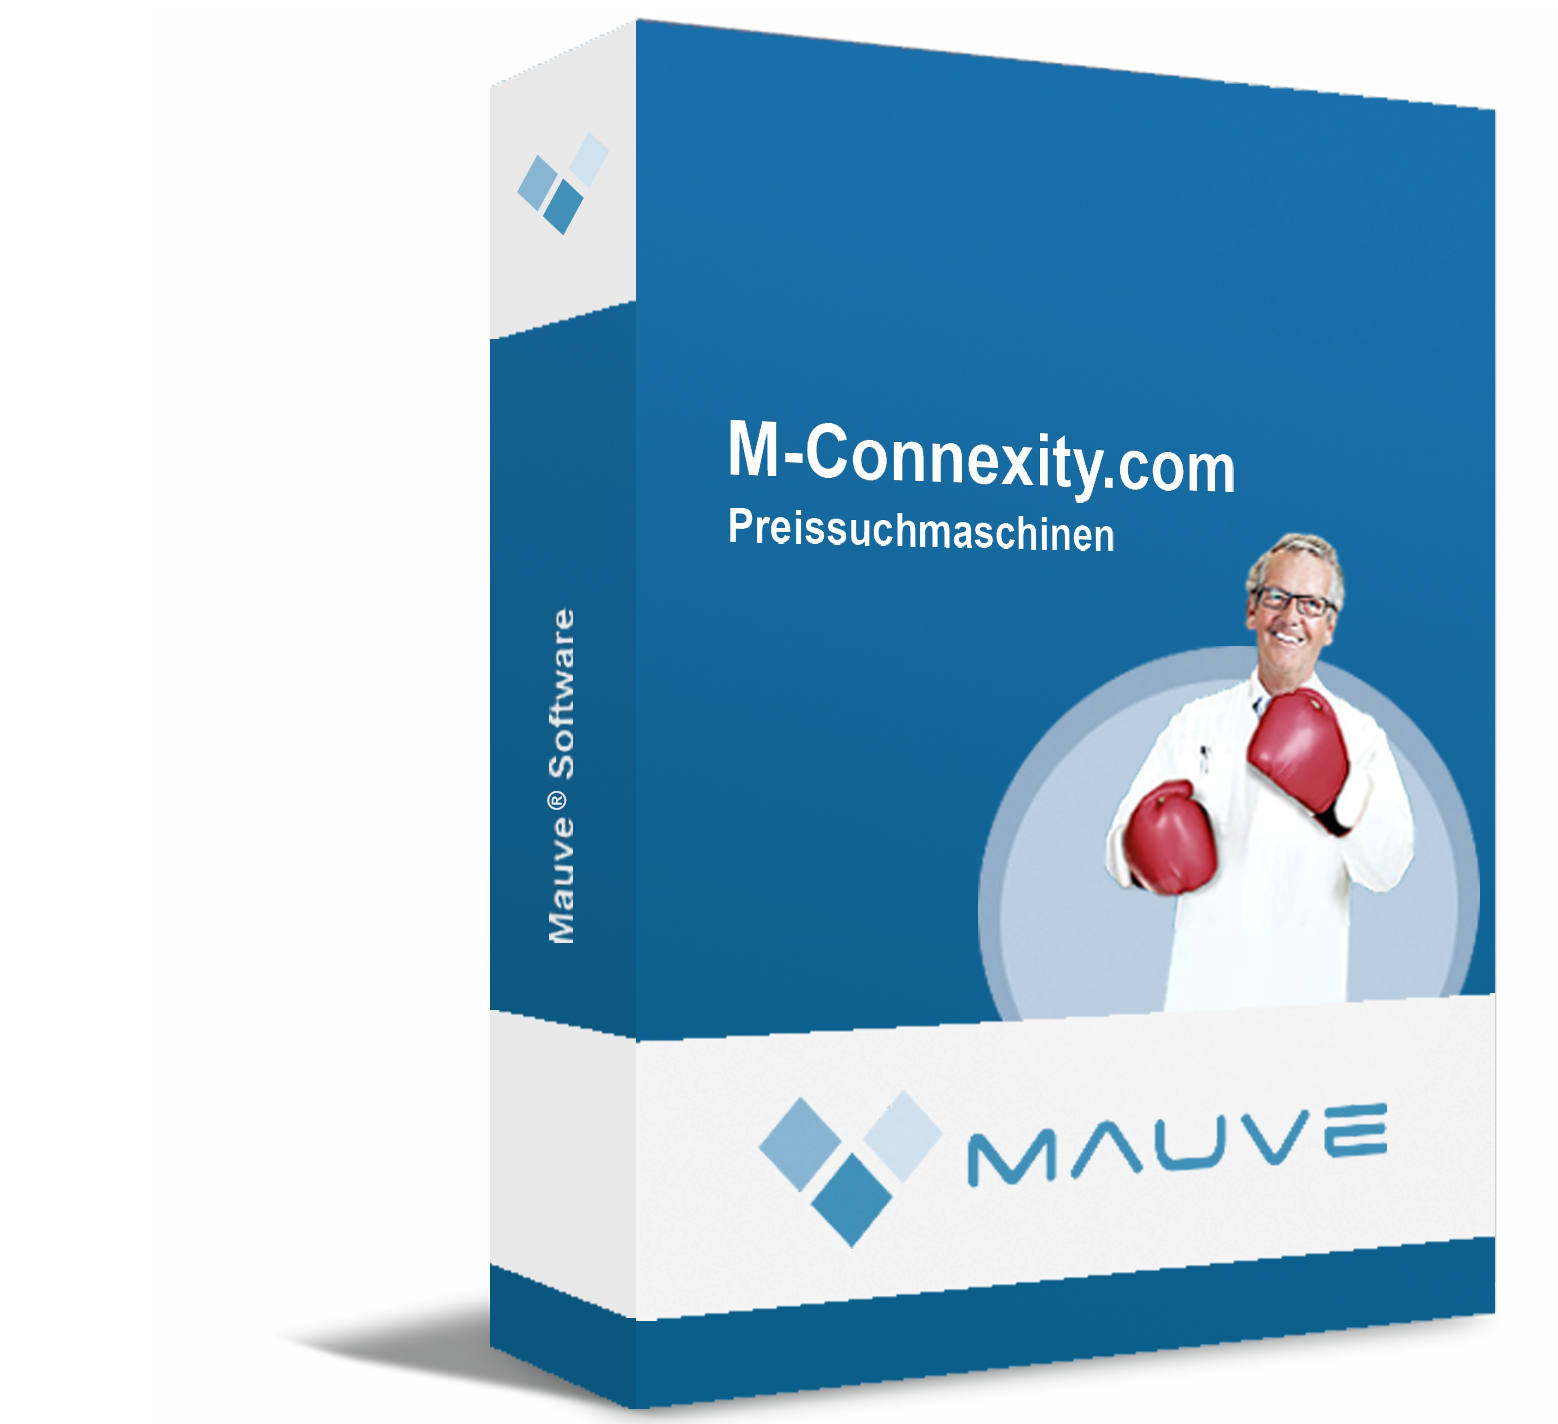 M-Connexity.com